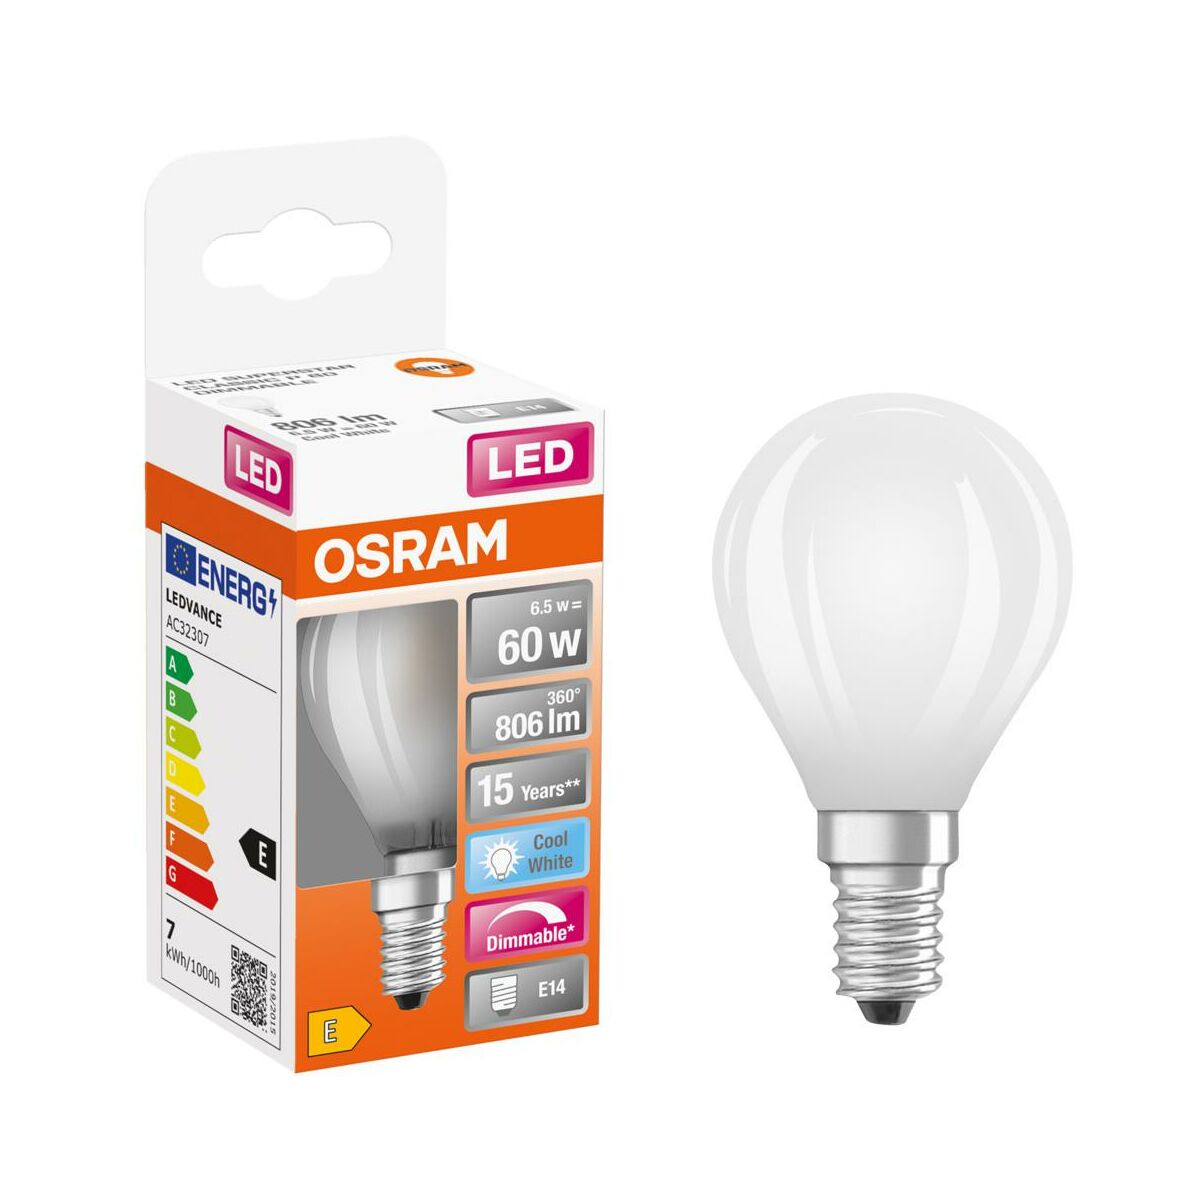 Żarówka LED E14 6,5 W = 60 W 806 lm Zimna biel Osram